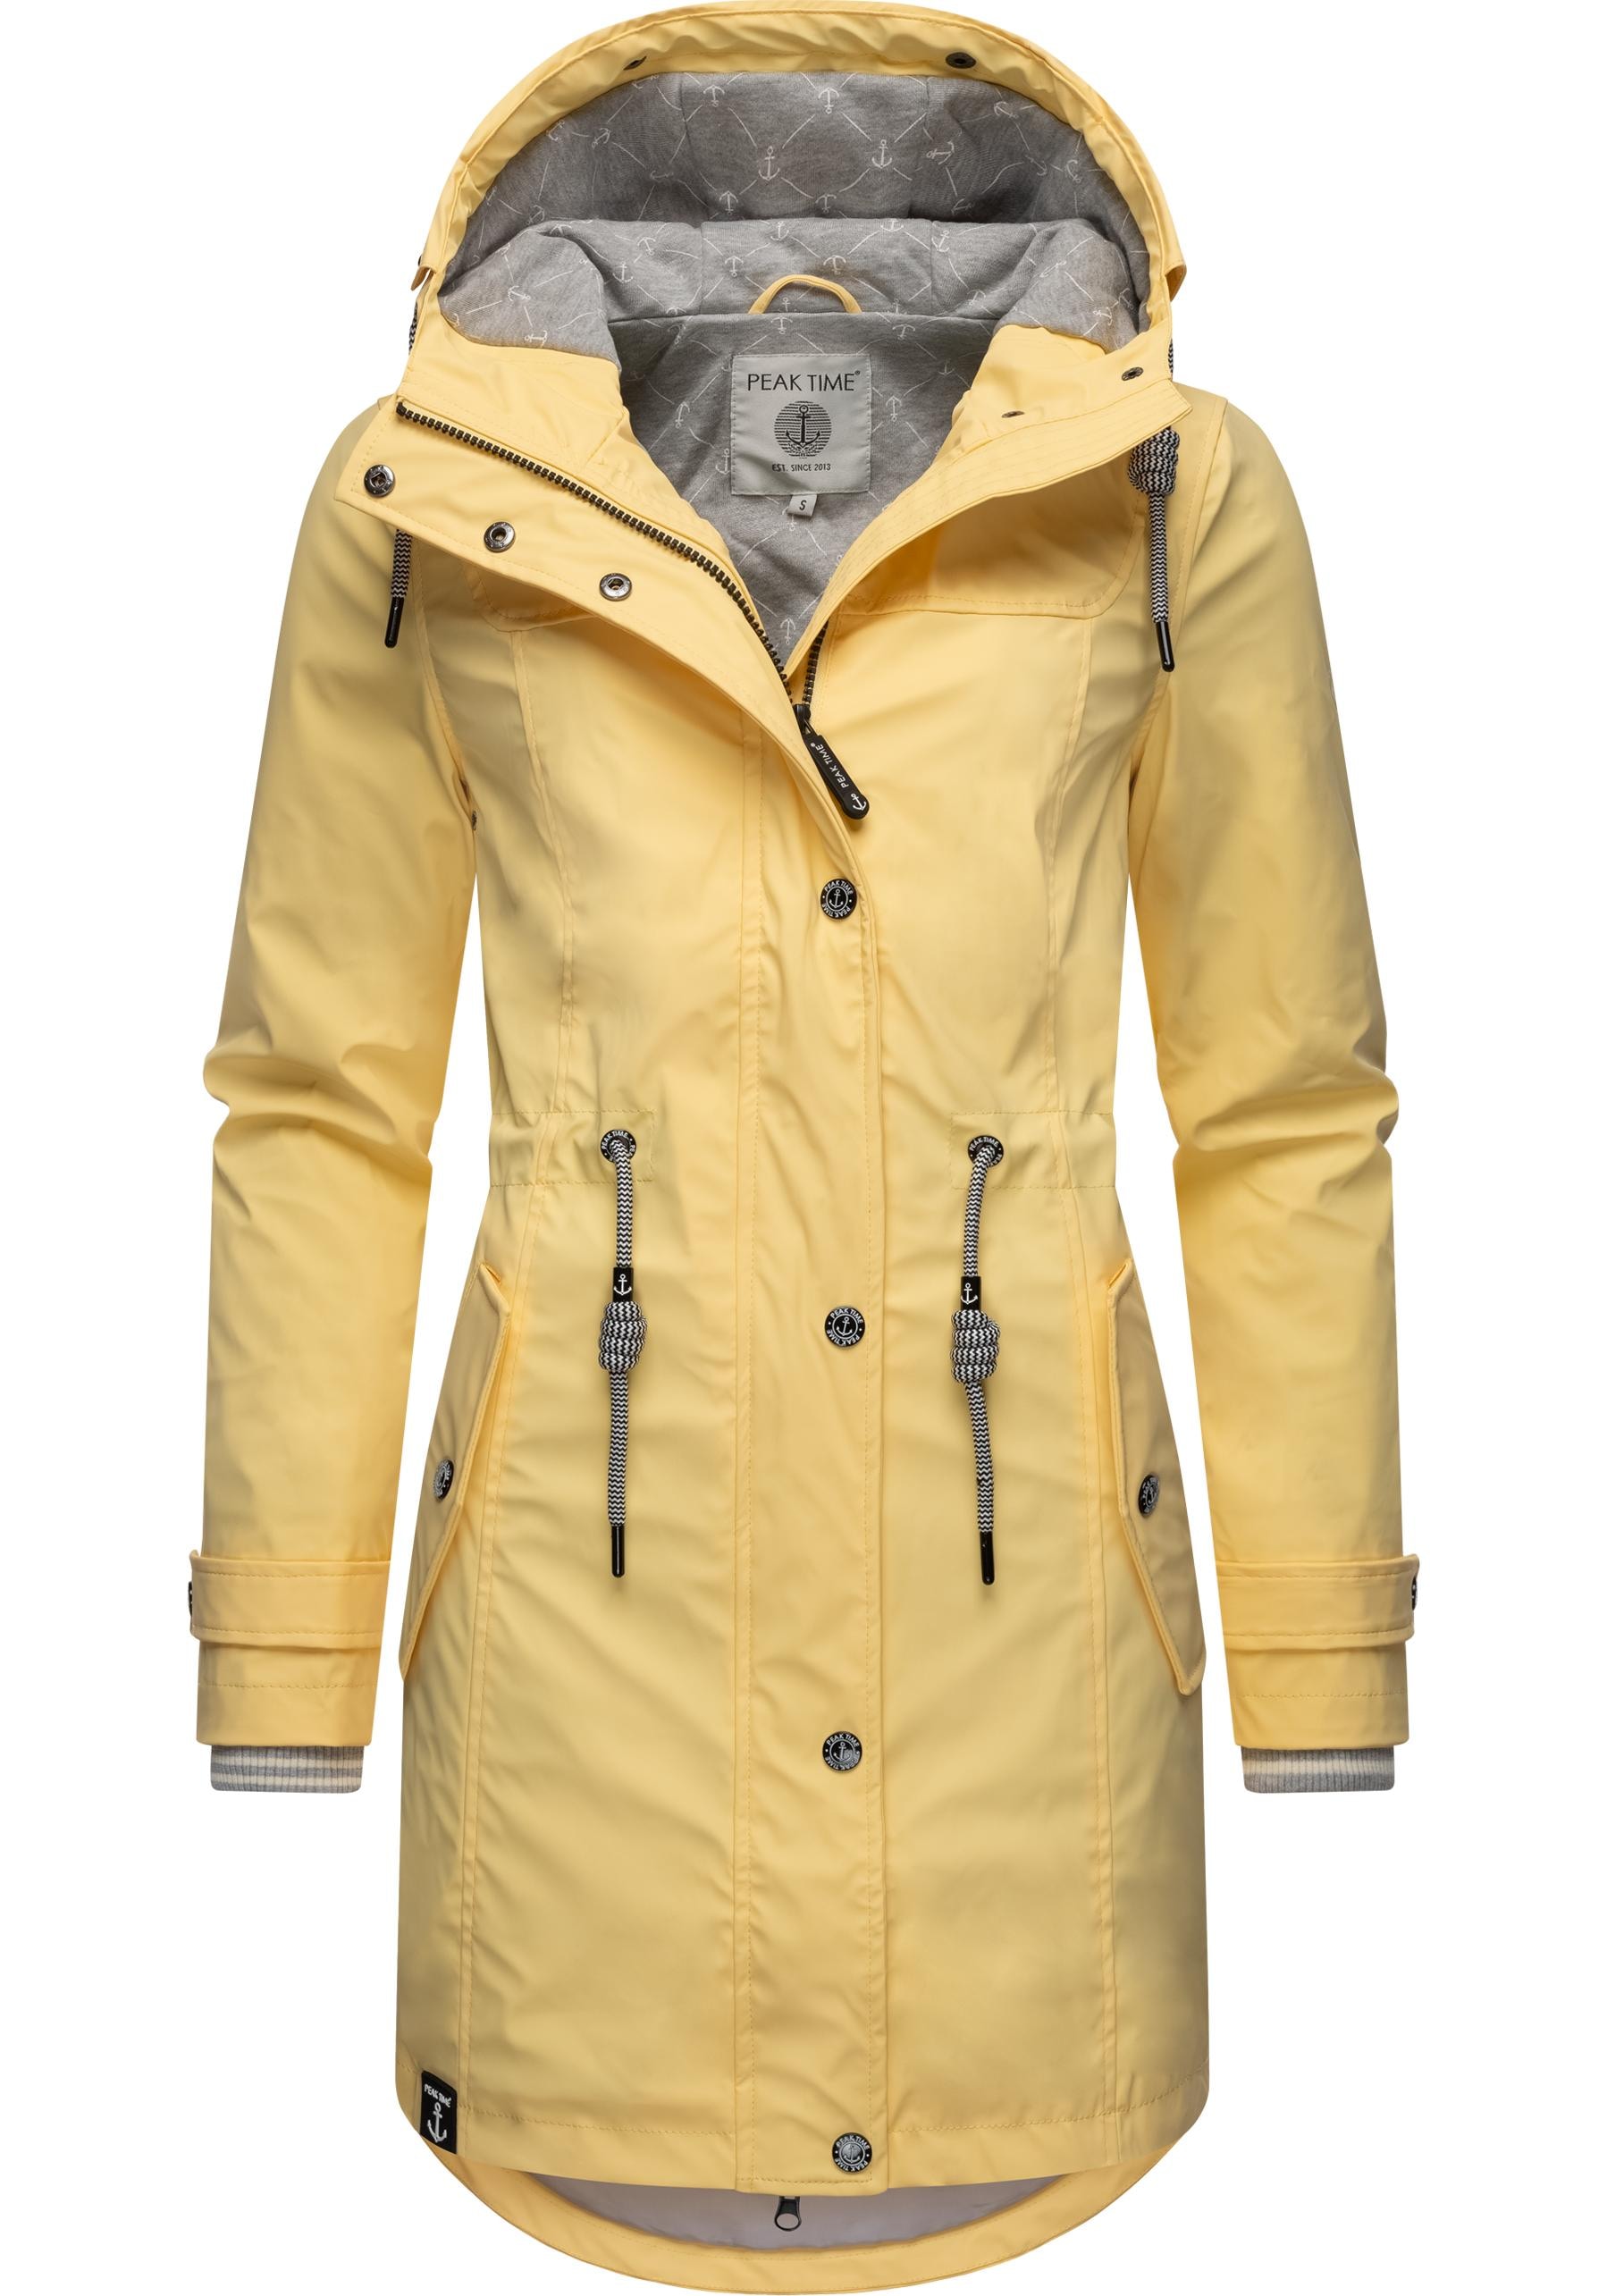 für »L60042«, TIME shoppen Regenjacke PEAK Kapuze, stylisch taillierter Regenmantel Damen mit